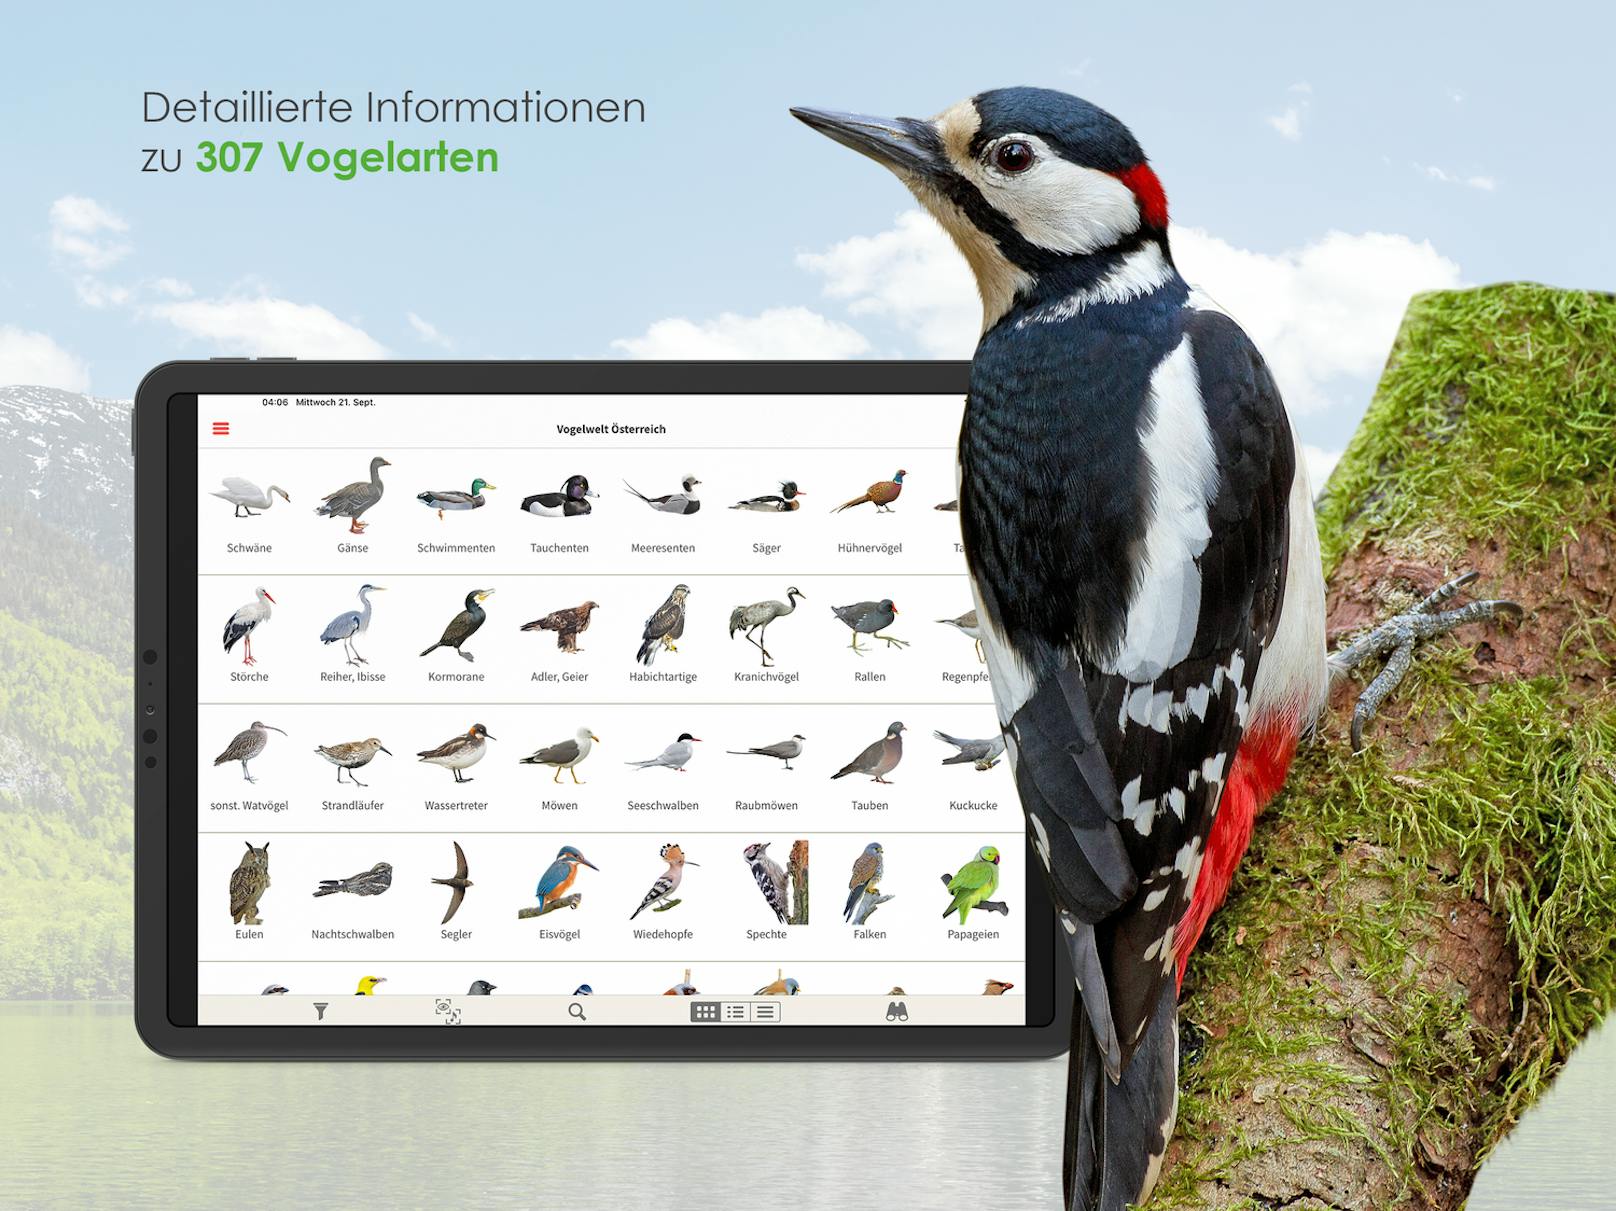 "Wer zwitschert da?" – neue App hilft bei Vogelbestimmung